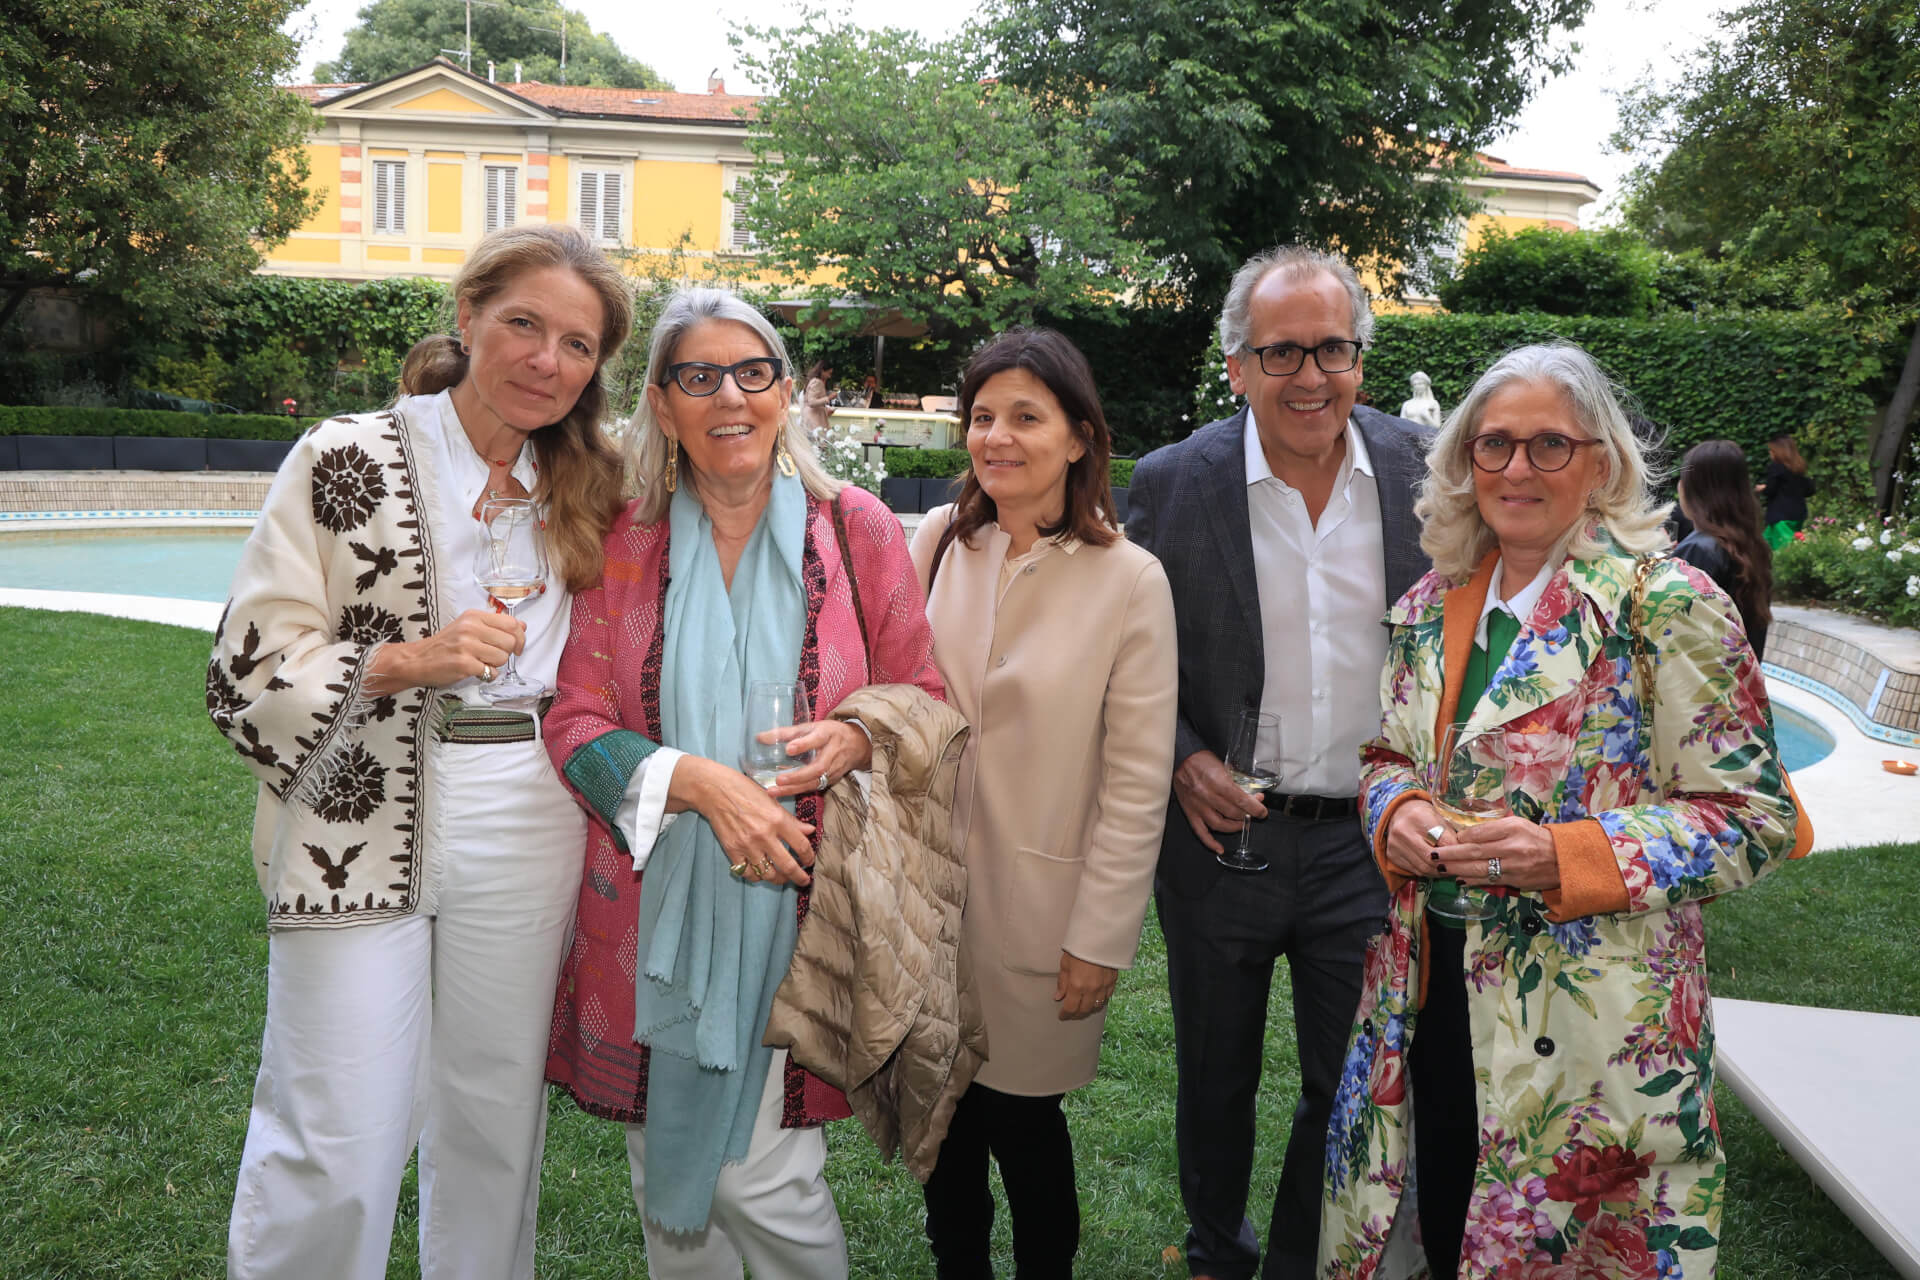 Veronica D'Antreves, Donatella de bevetelli, Angelica e Francesco Ruspoli, Alessandra Scarpato